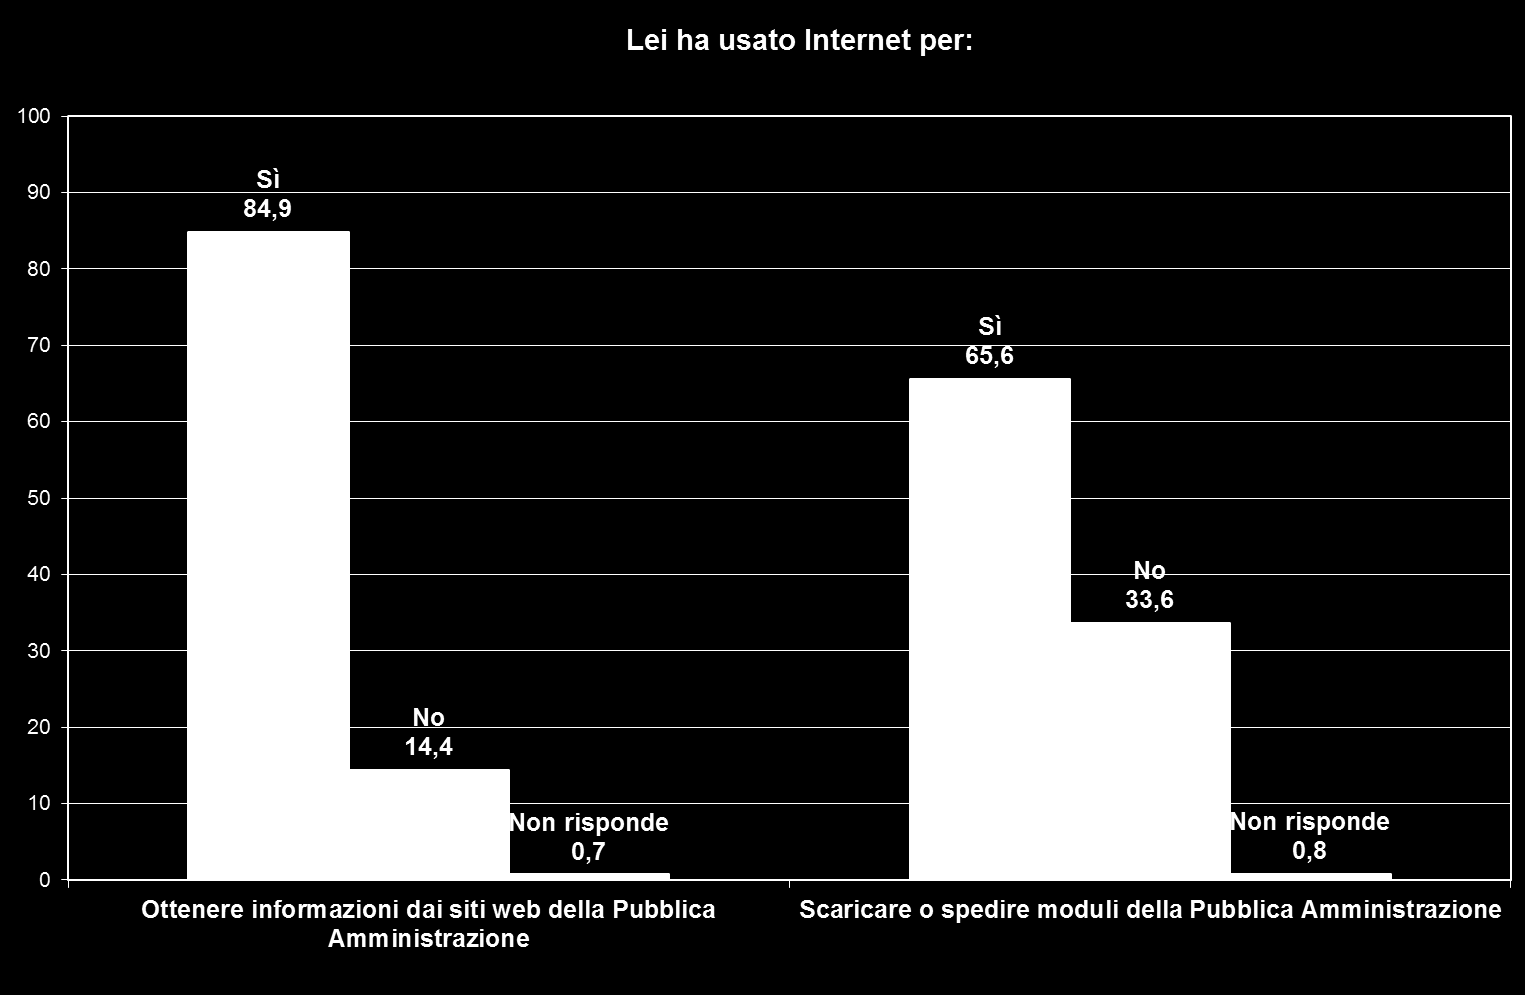 Una larghissima parte della popolazione di riferimento ha utilizzato internet per ottenere informazioni dalla Pubblica Amministrazione (84,9%).